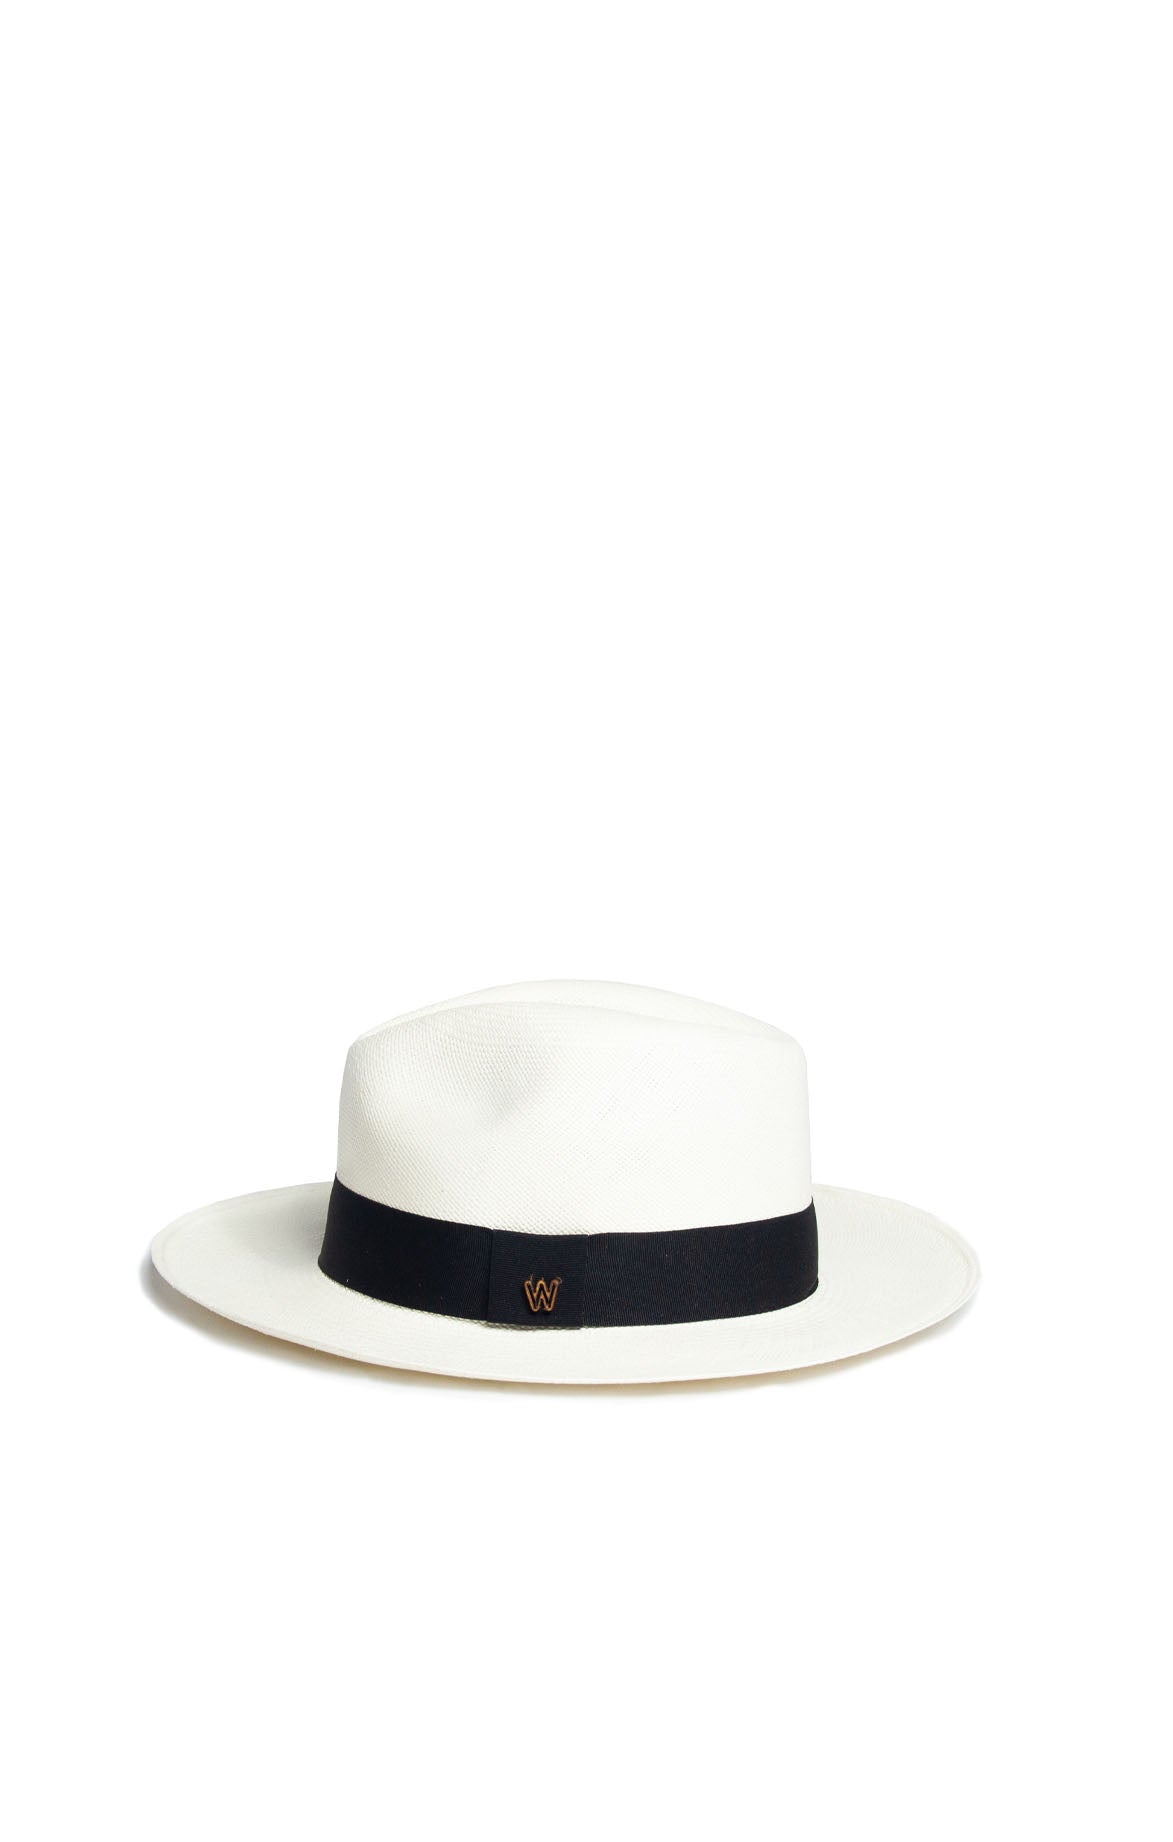 White Woven Panama Hat